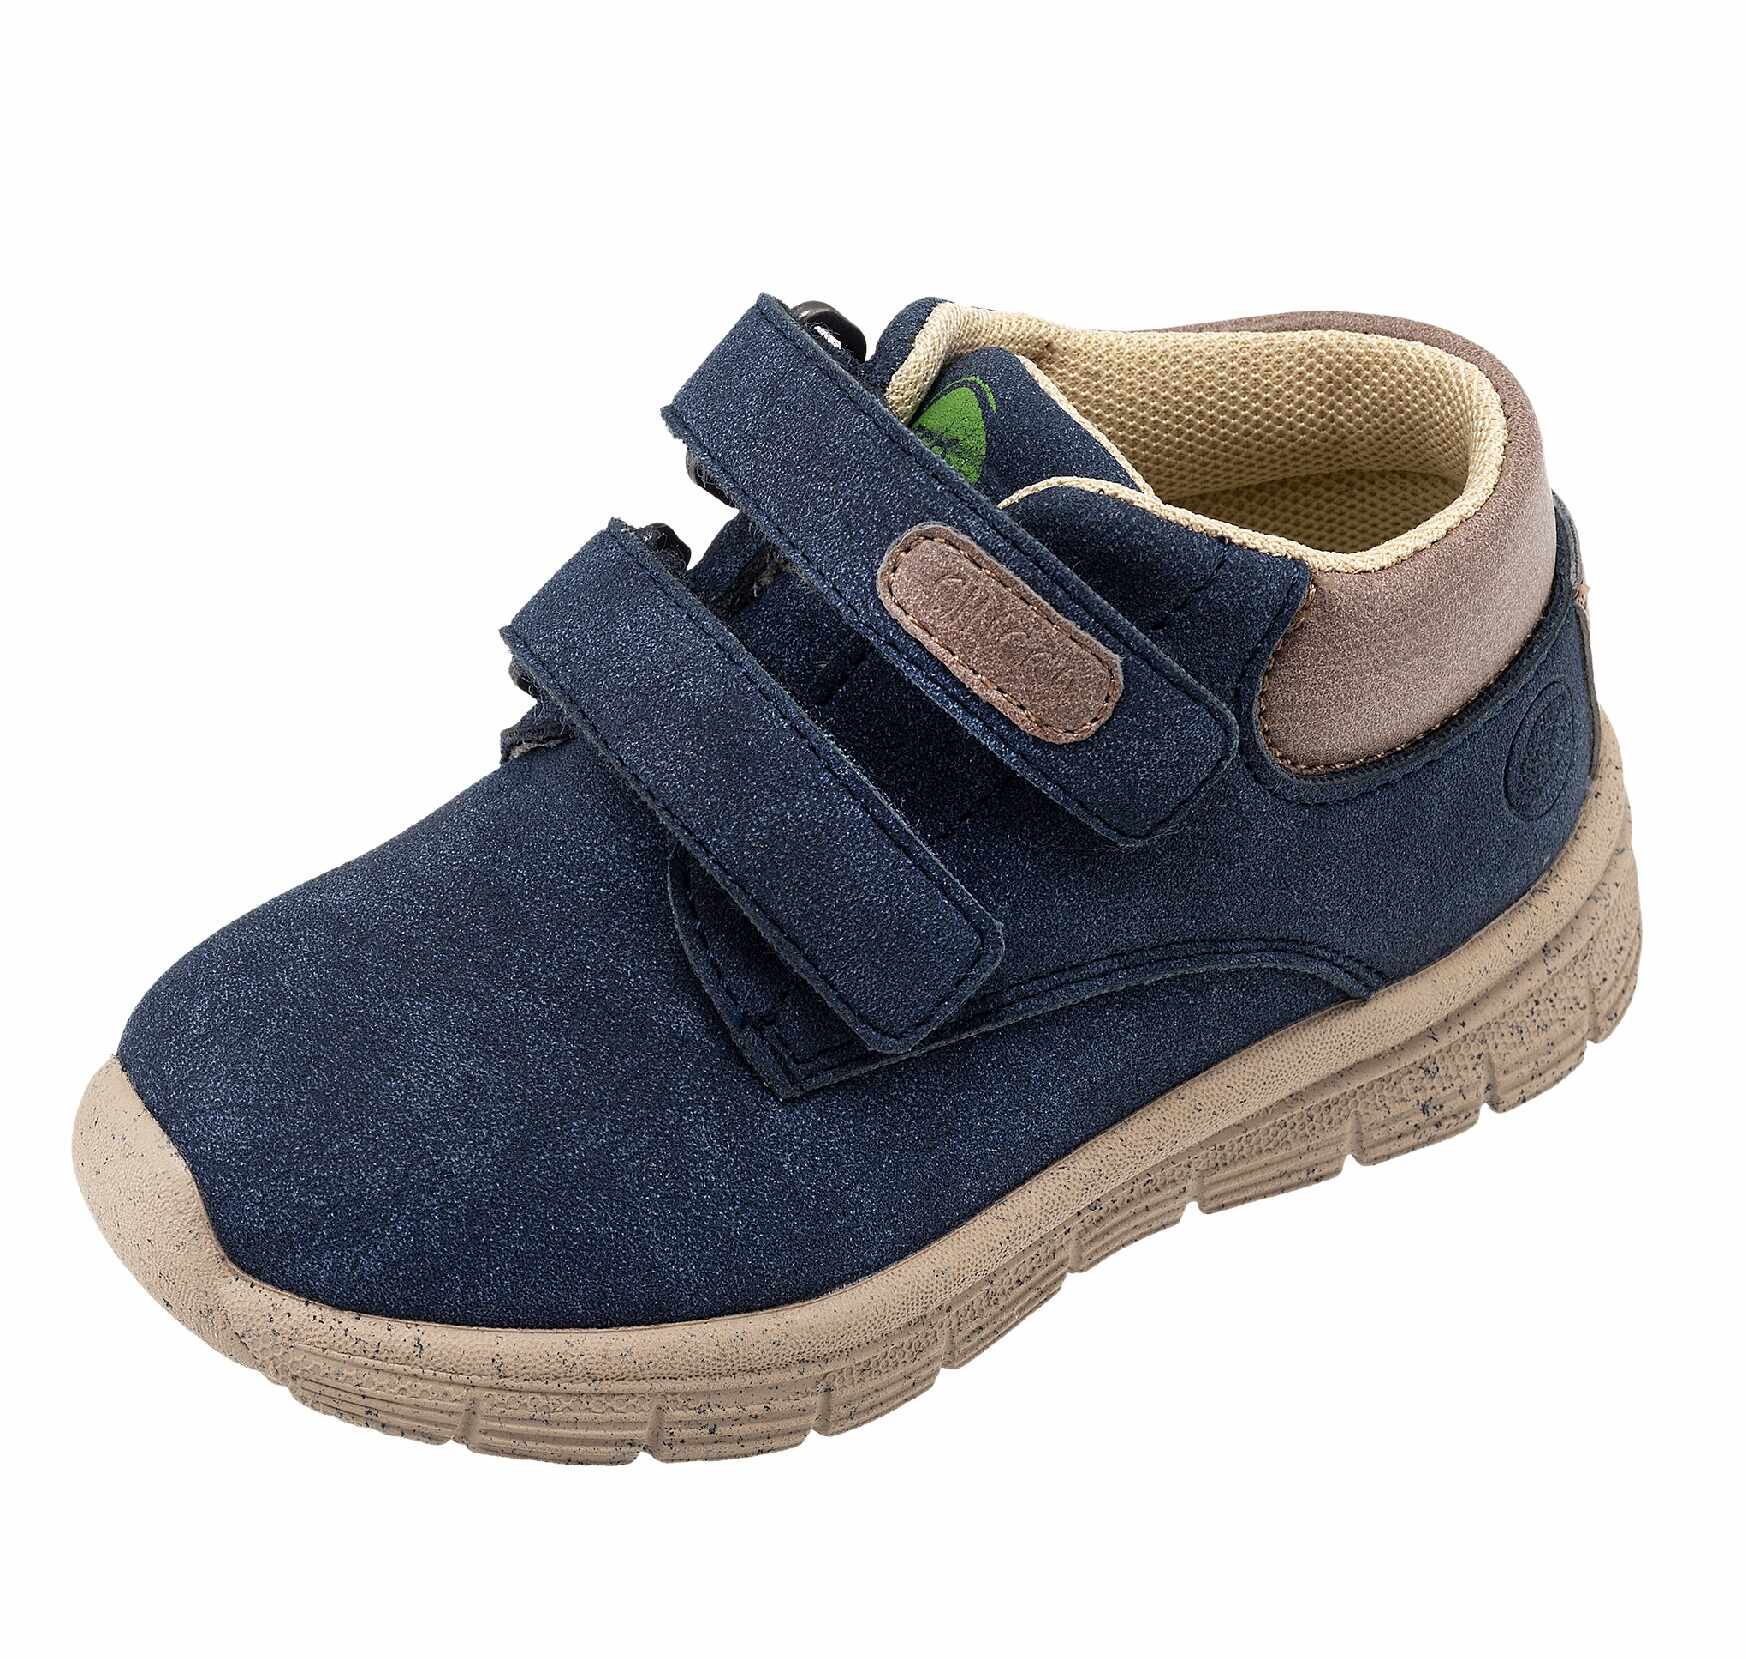 Pantofi copii Chicco Chios, 66153-61P, Albastru